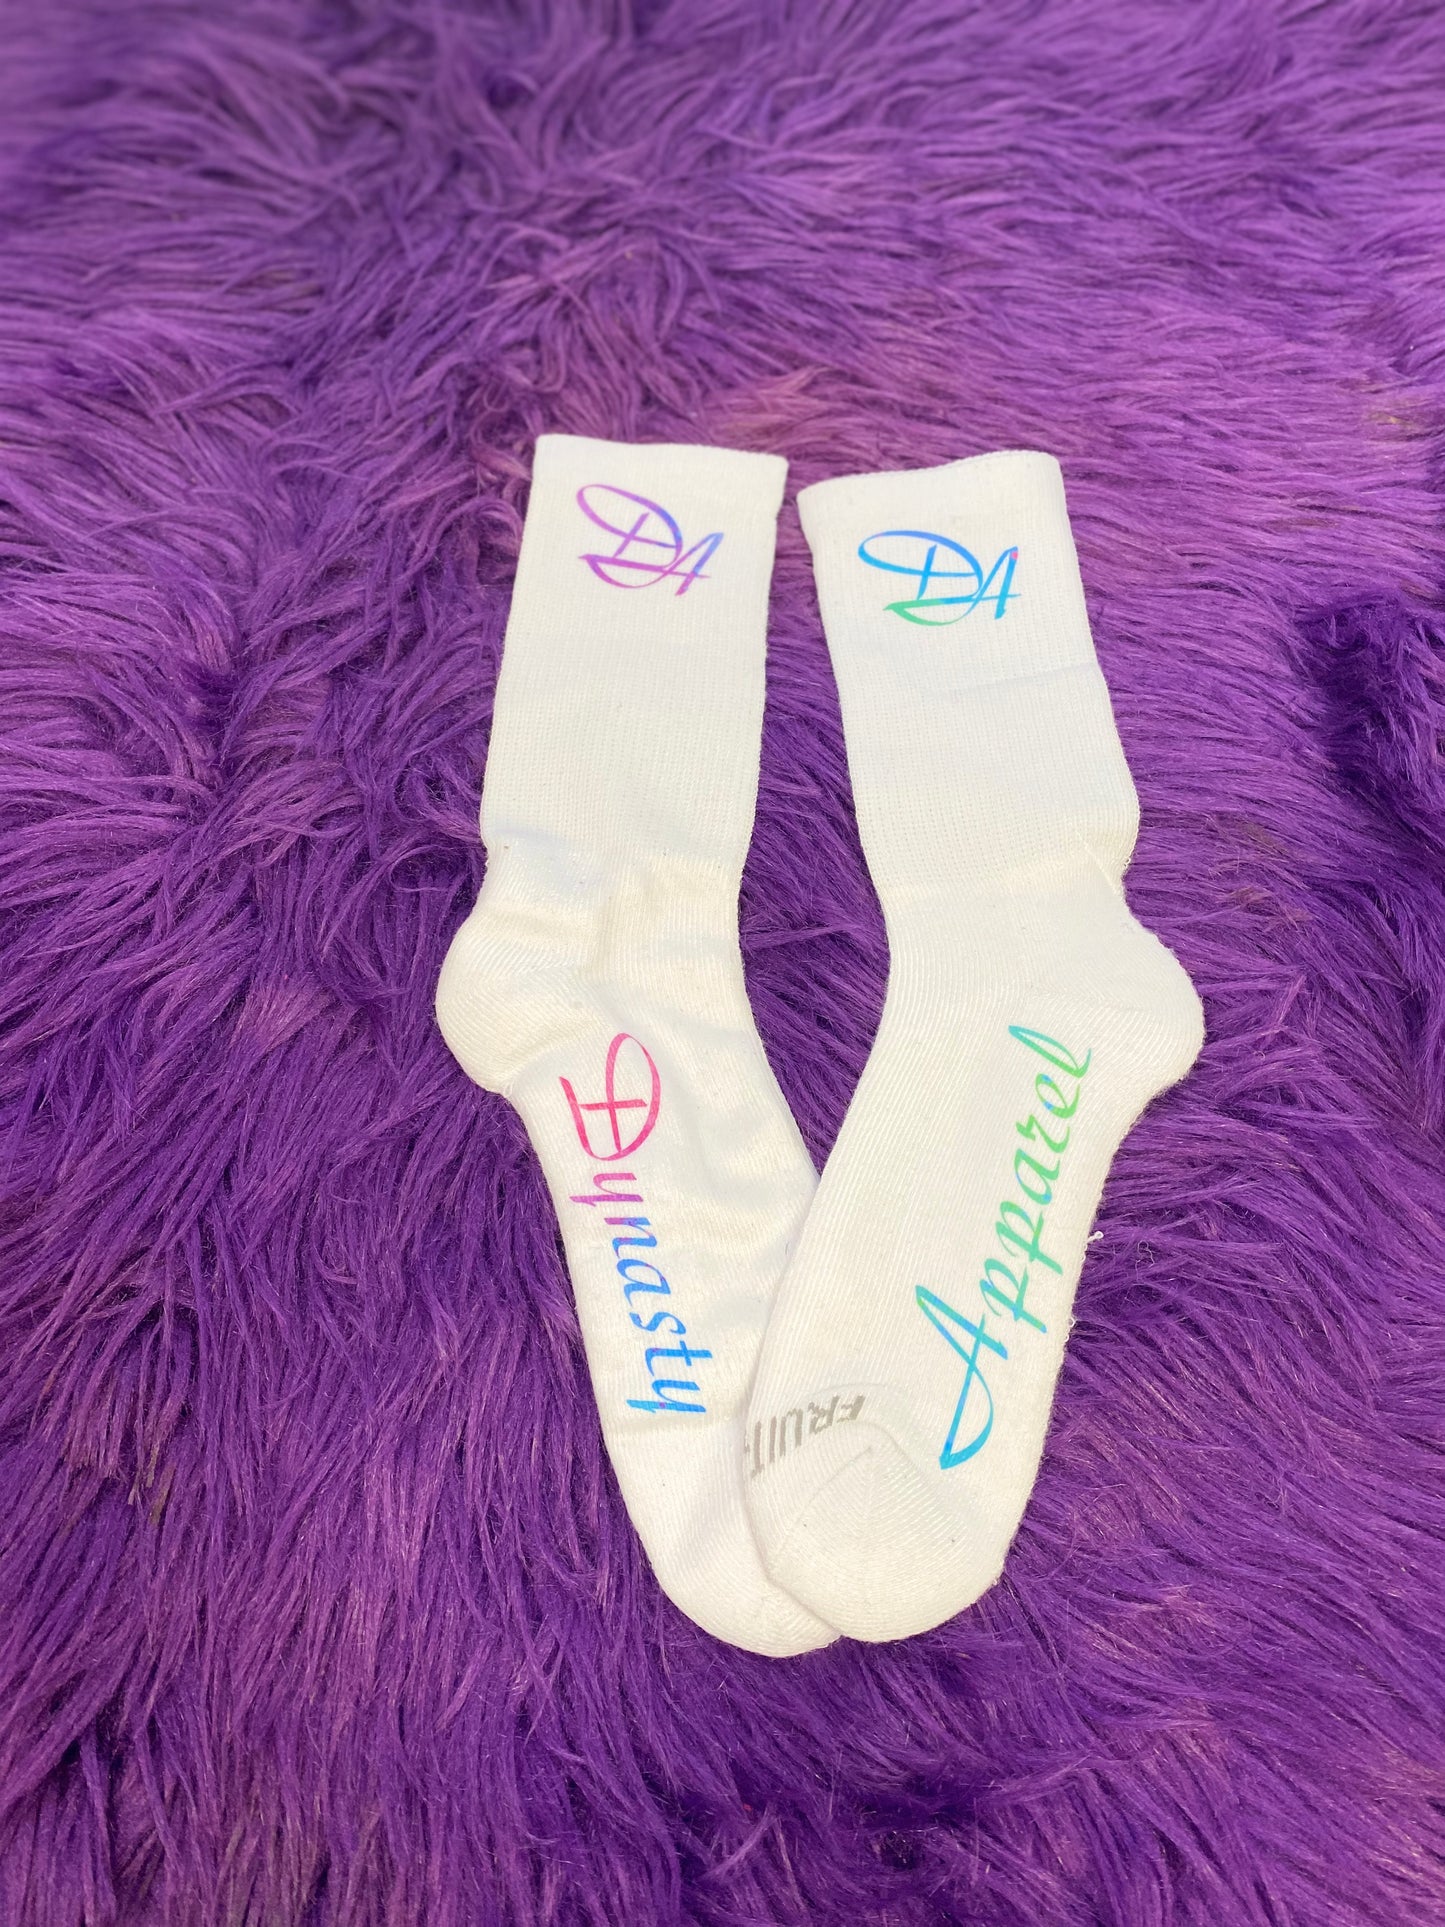 Shimmer & Shine Women’s Socks